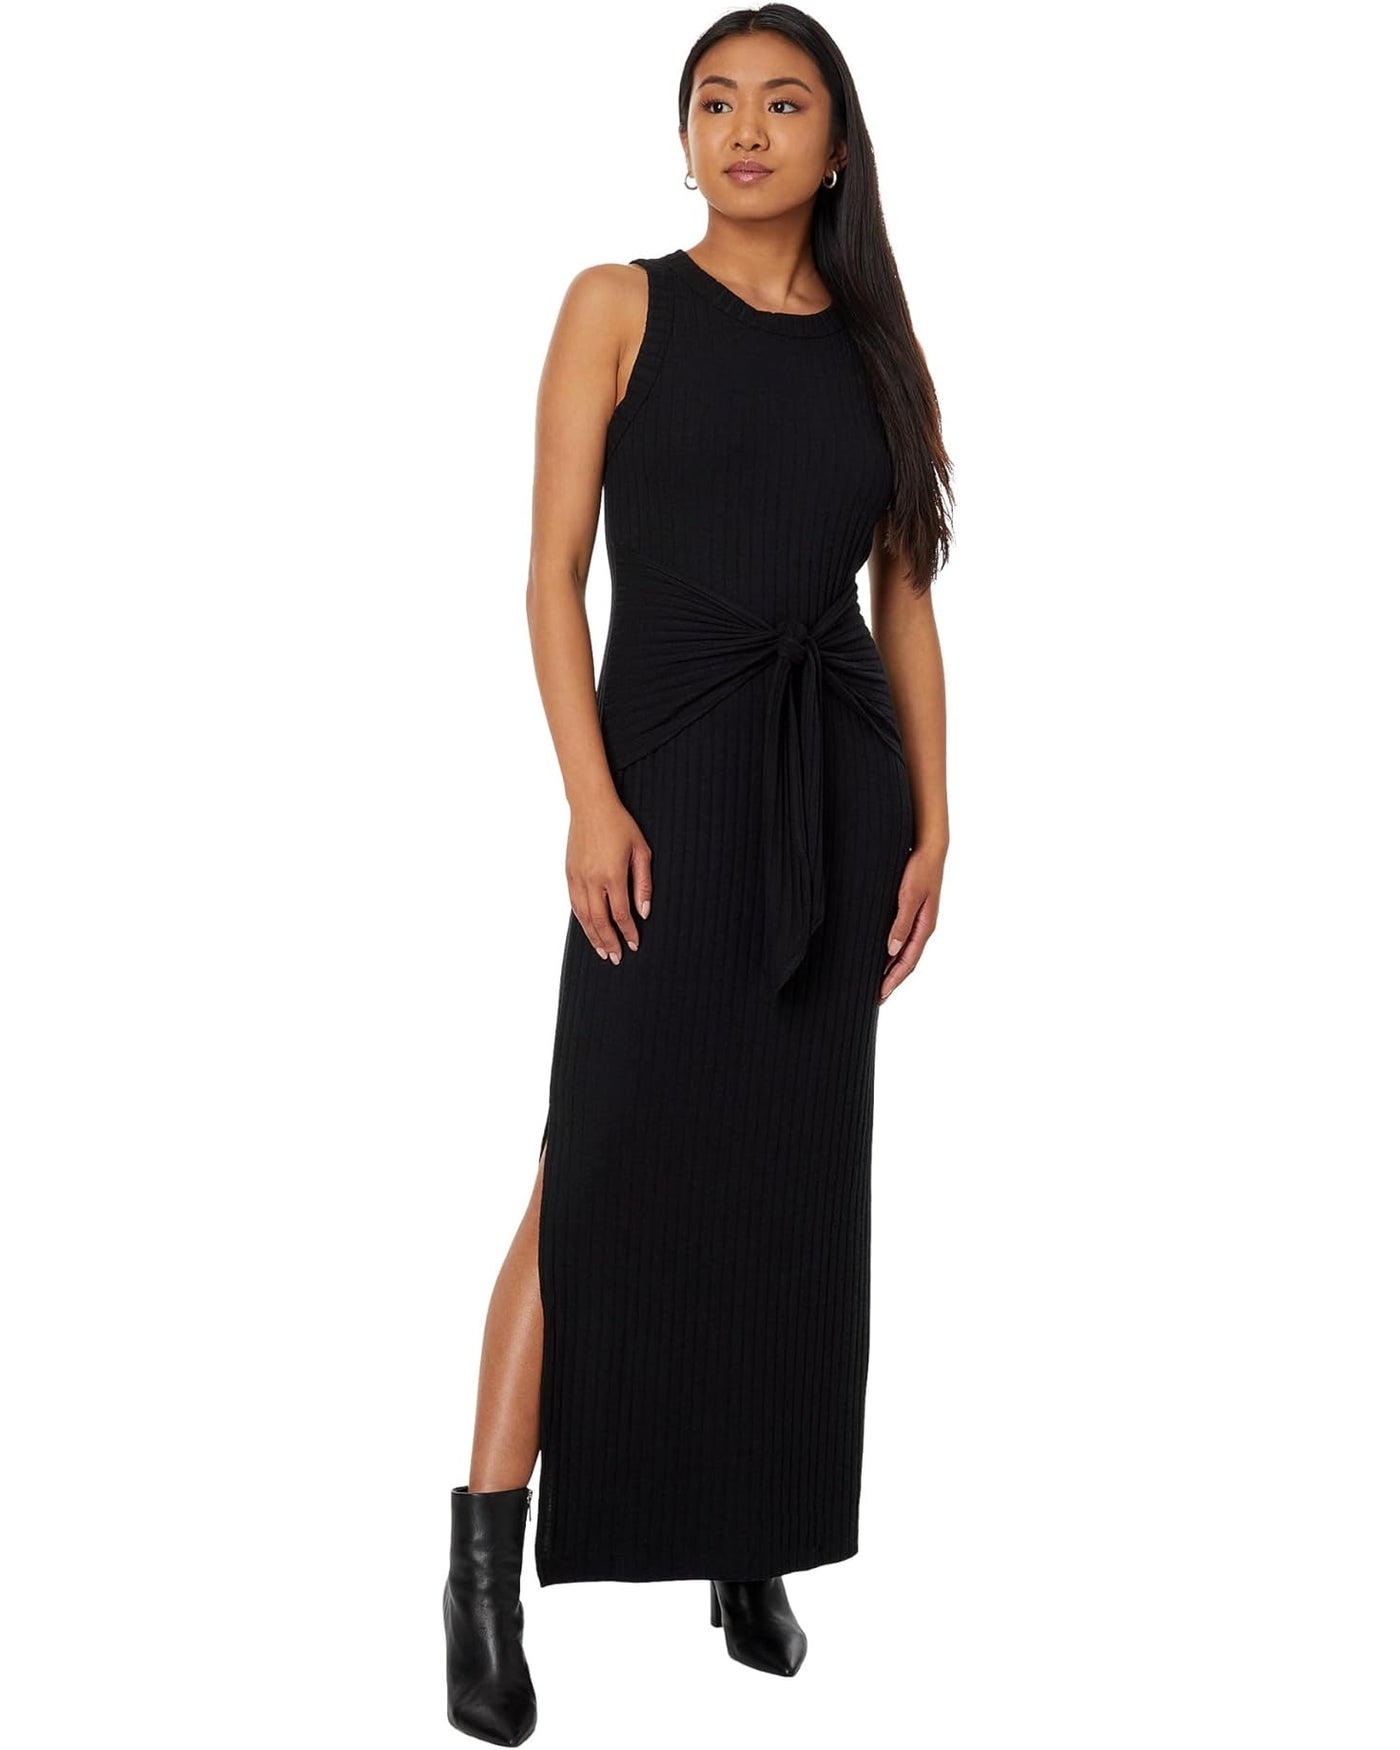 Solana Midi Dress in Black